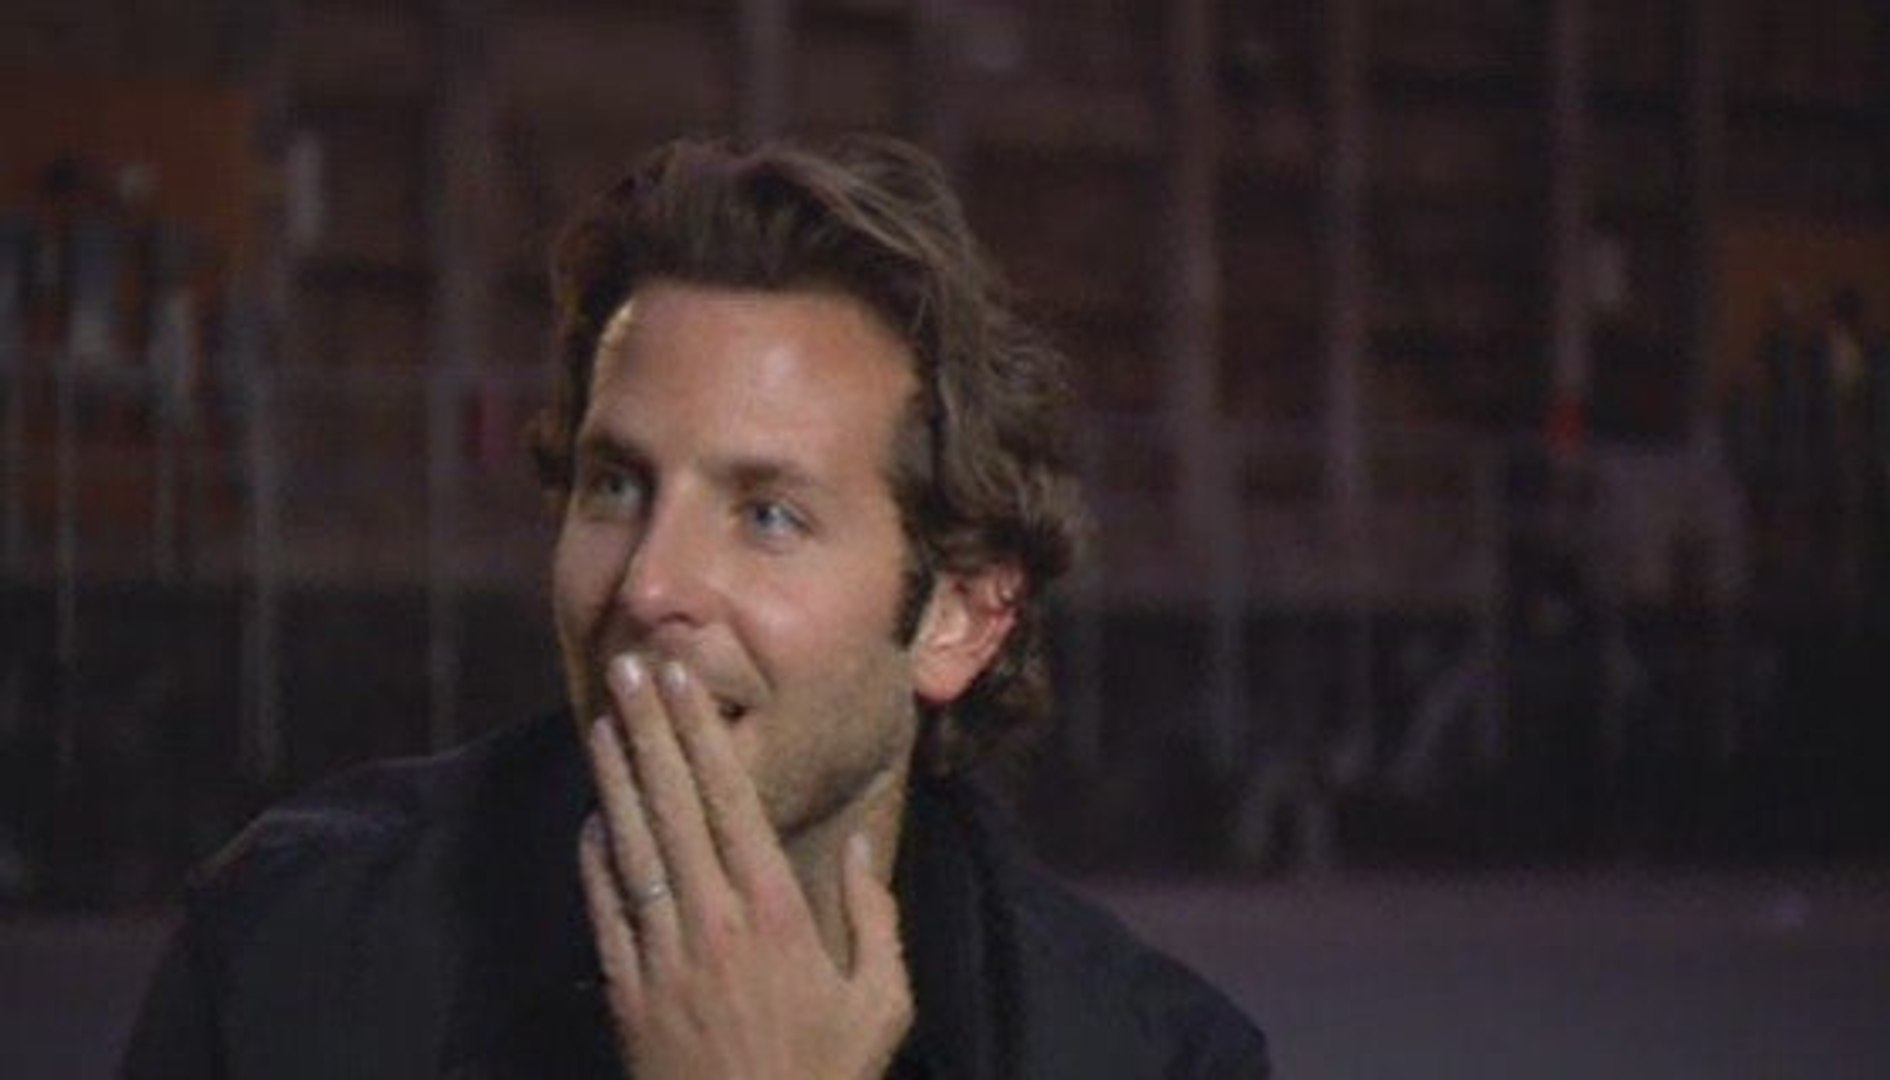 The Hangover Part III Interview - Bradley Cooper (2013) - Bradley